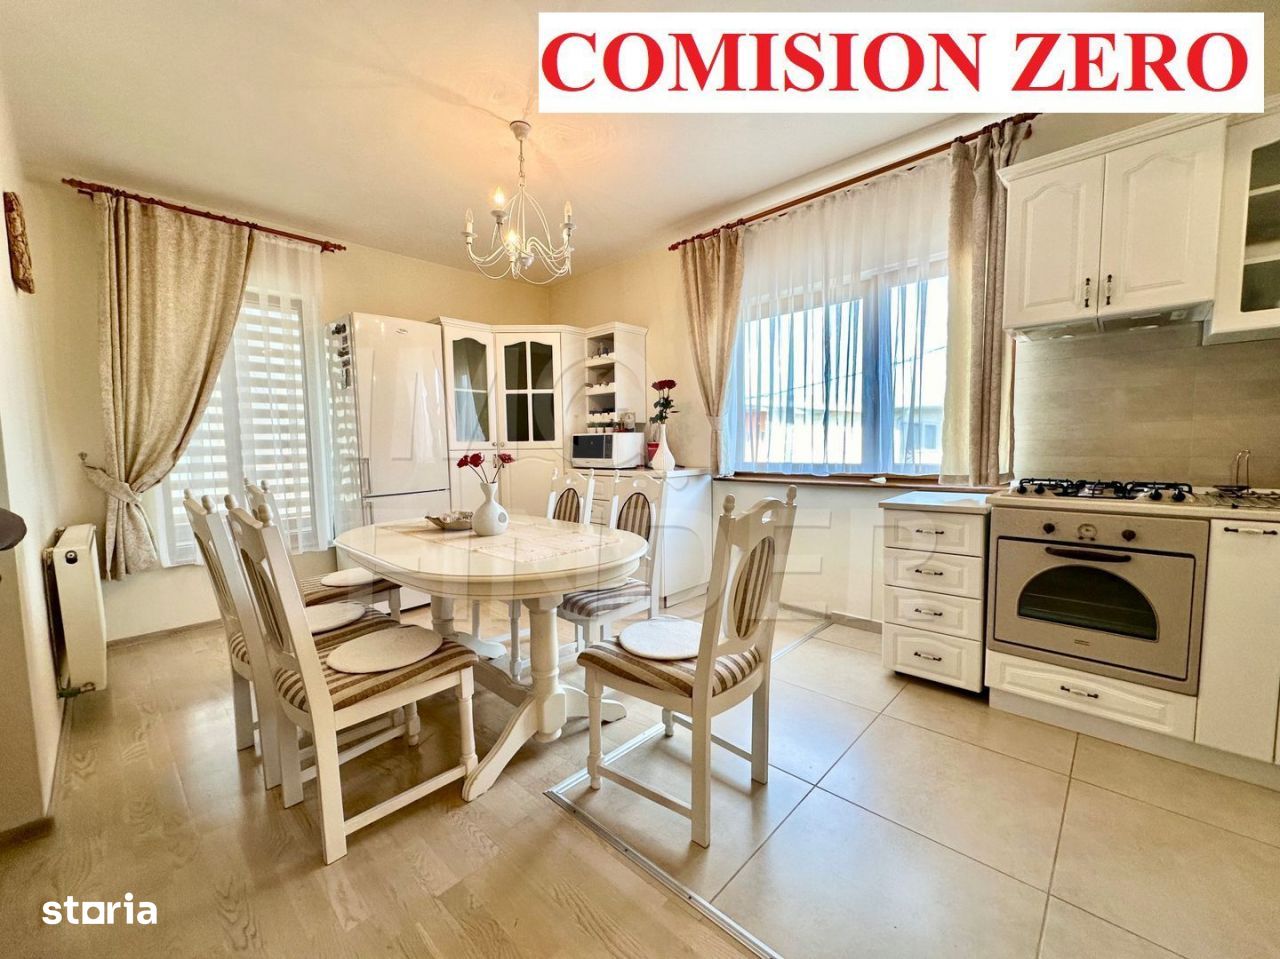 COMISION ZERO- Vânzare 3 camere imobil nou, lângă liceul Waldorf